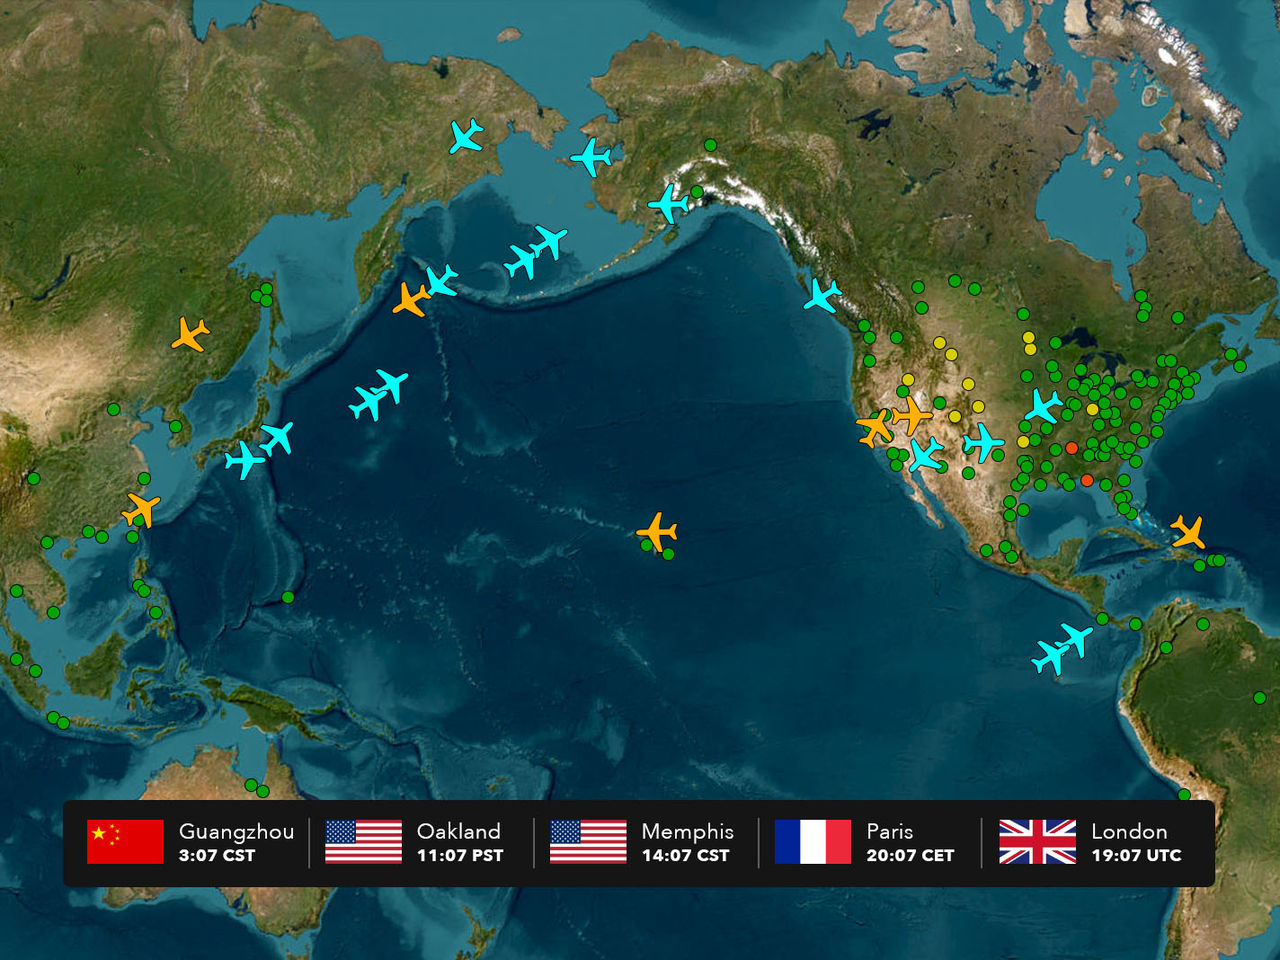 하단에는 5가지 표준 시간대를 보여주는 막대가 있고 다양한 색상의 점과 비행기 모양 아이콘이 표시된 전 세계 맵